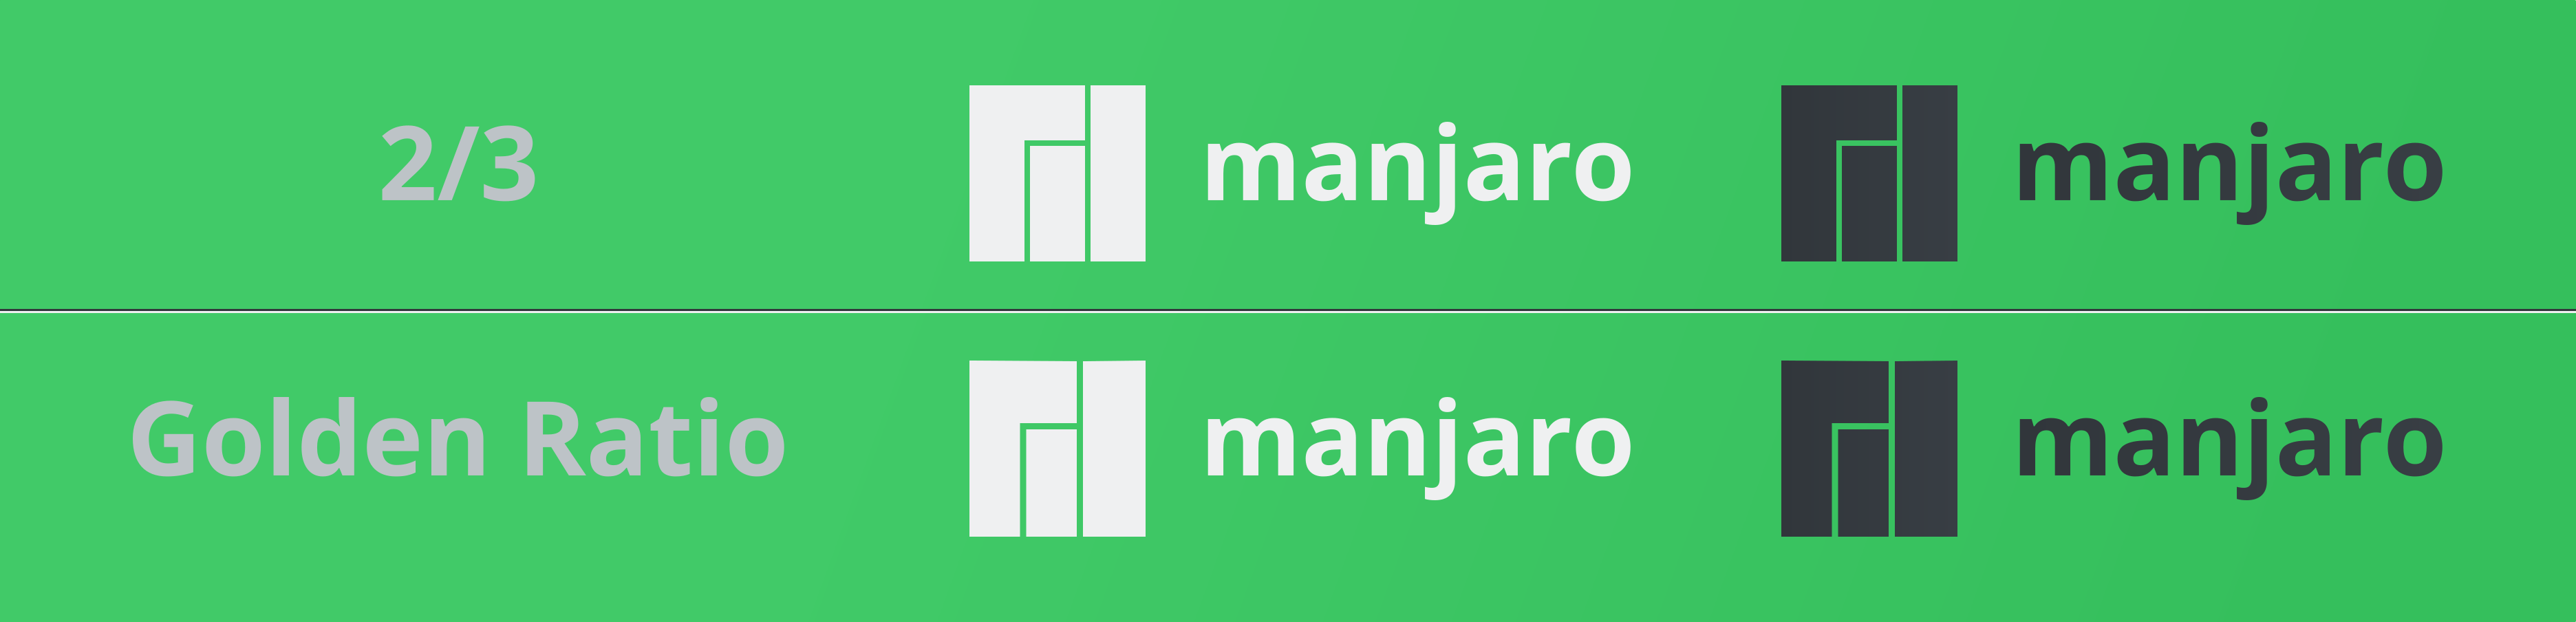 Manjaro Logo - What is Manjaros 